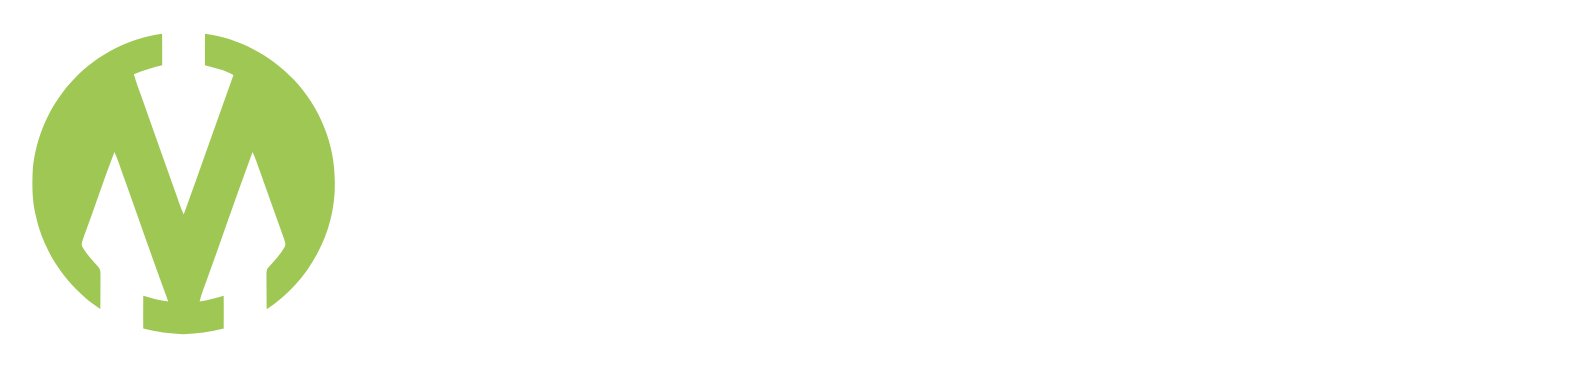 Montauk Renewables logo grand pour les fonds sombres (PNG transparent)